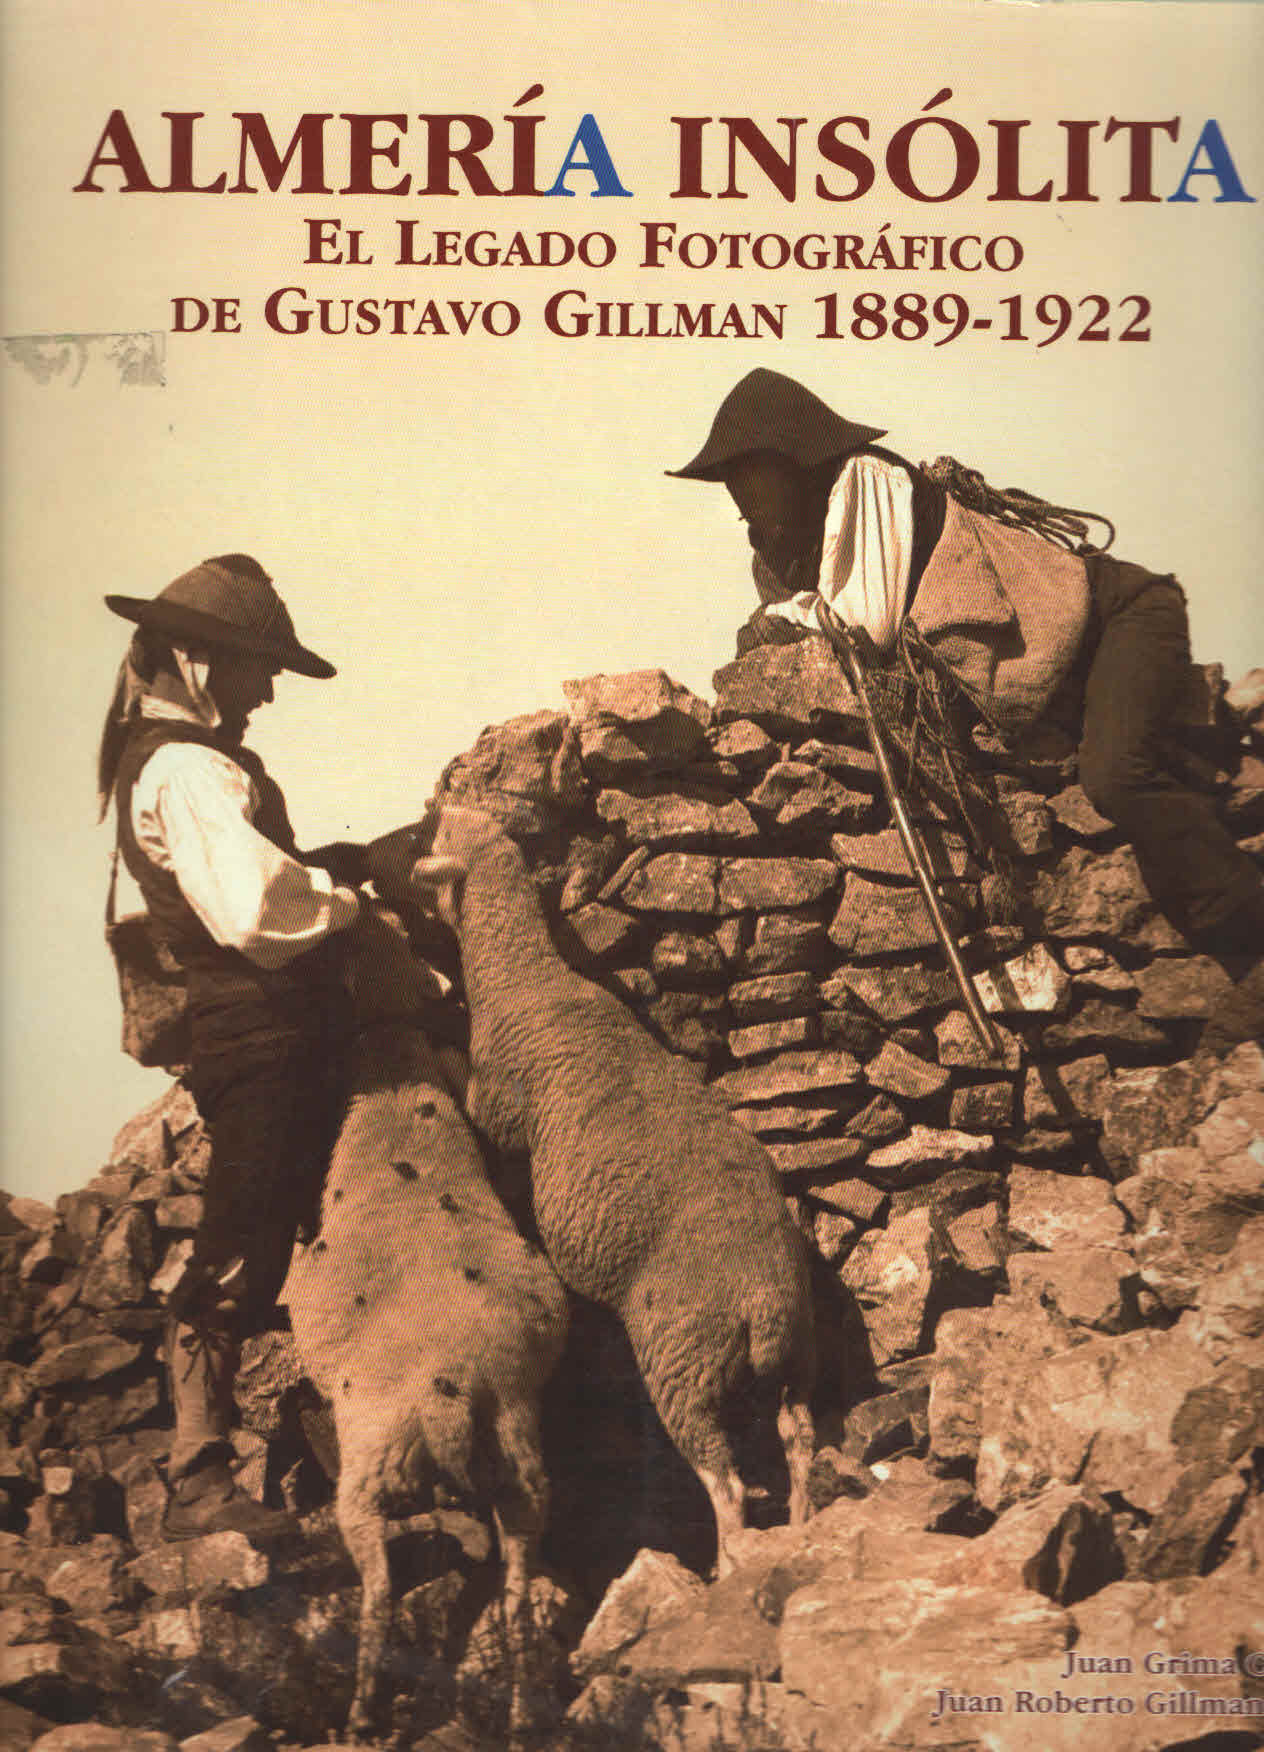 ALMERIA INSOLITA. EL LEGADO FOTOGRAFICO DE GUSTAVO GILLMAN 1889-1922.